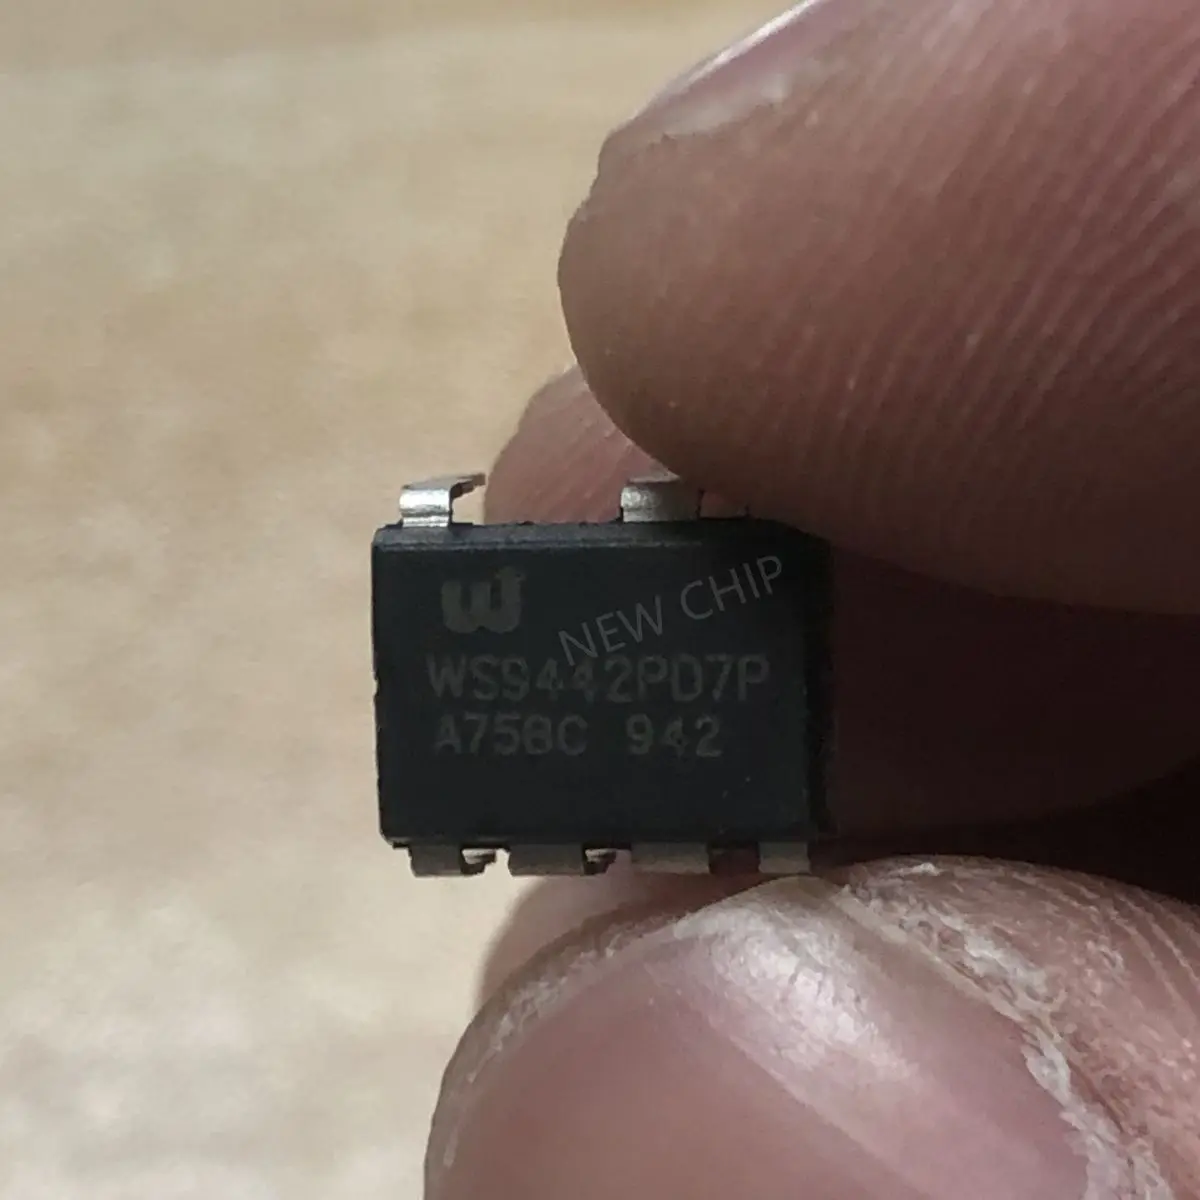 5-50 pçs/lote WS9442 WS9442PD7P Novo original não-isolado buck LED constante atual driver chip WS9442